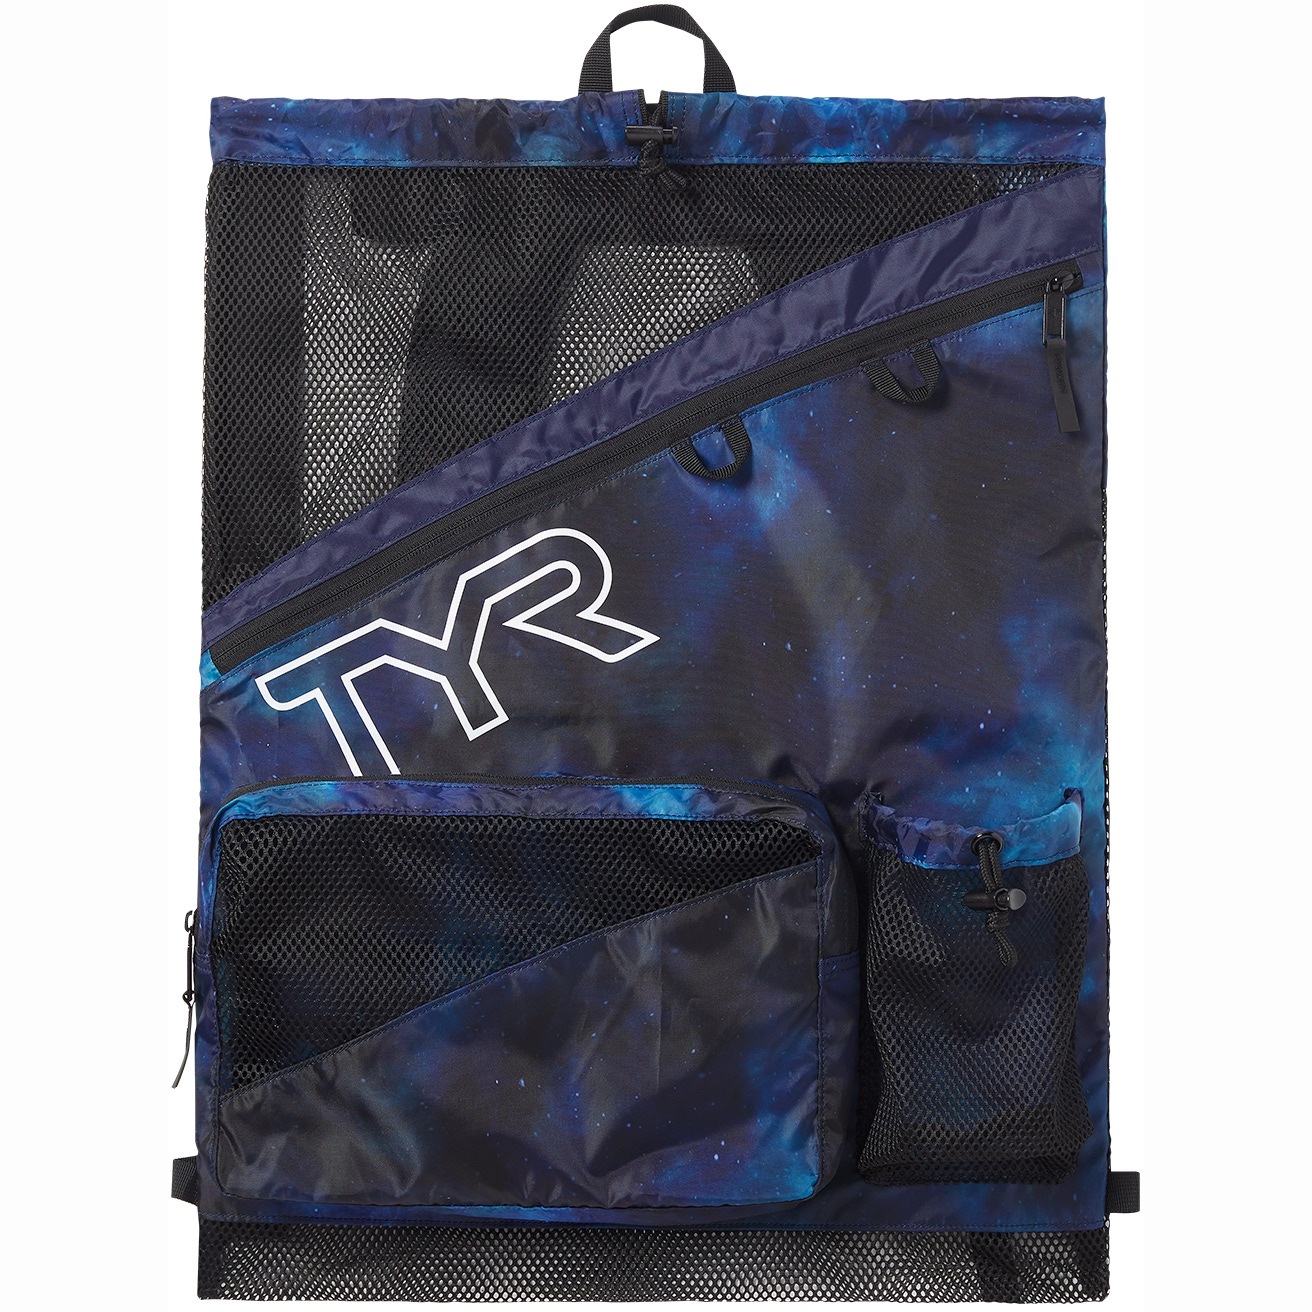 Produktbild von TYR Elite Team Mesh 40L Rucksack - blue/teal/green